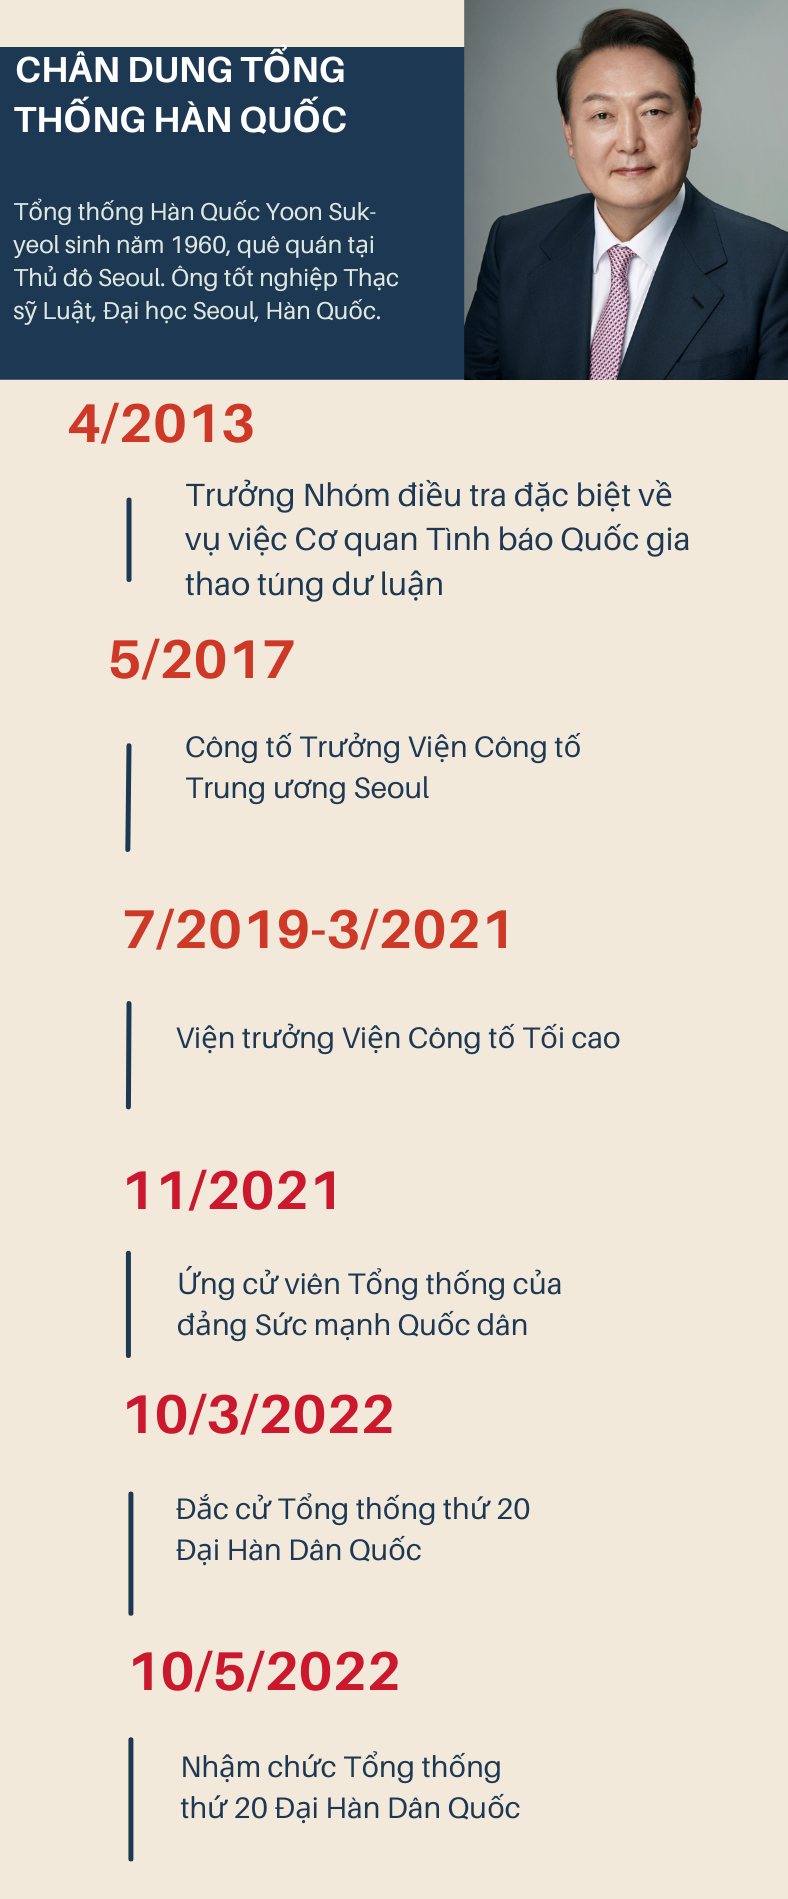 [Infographic] Chân dung Tổng thống Hàn Quốc sắp thăm Việt Nam - Ảnh 1